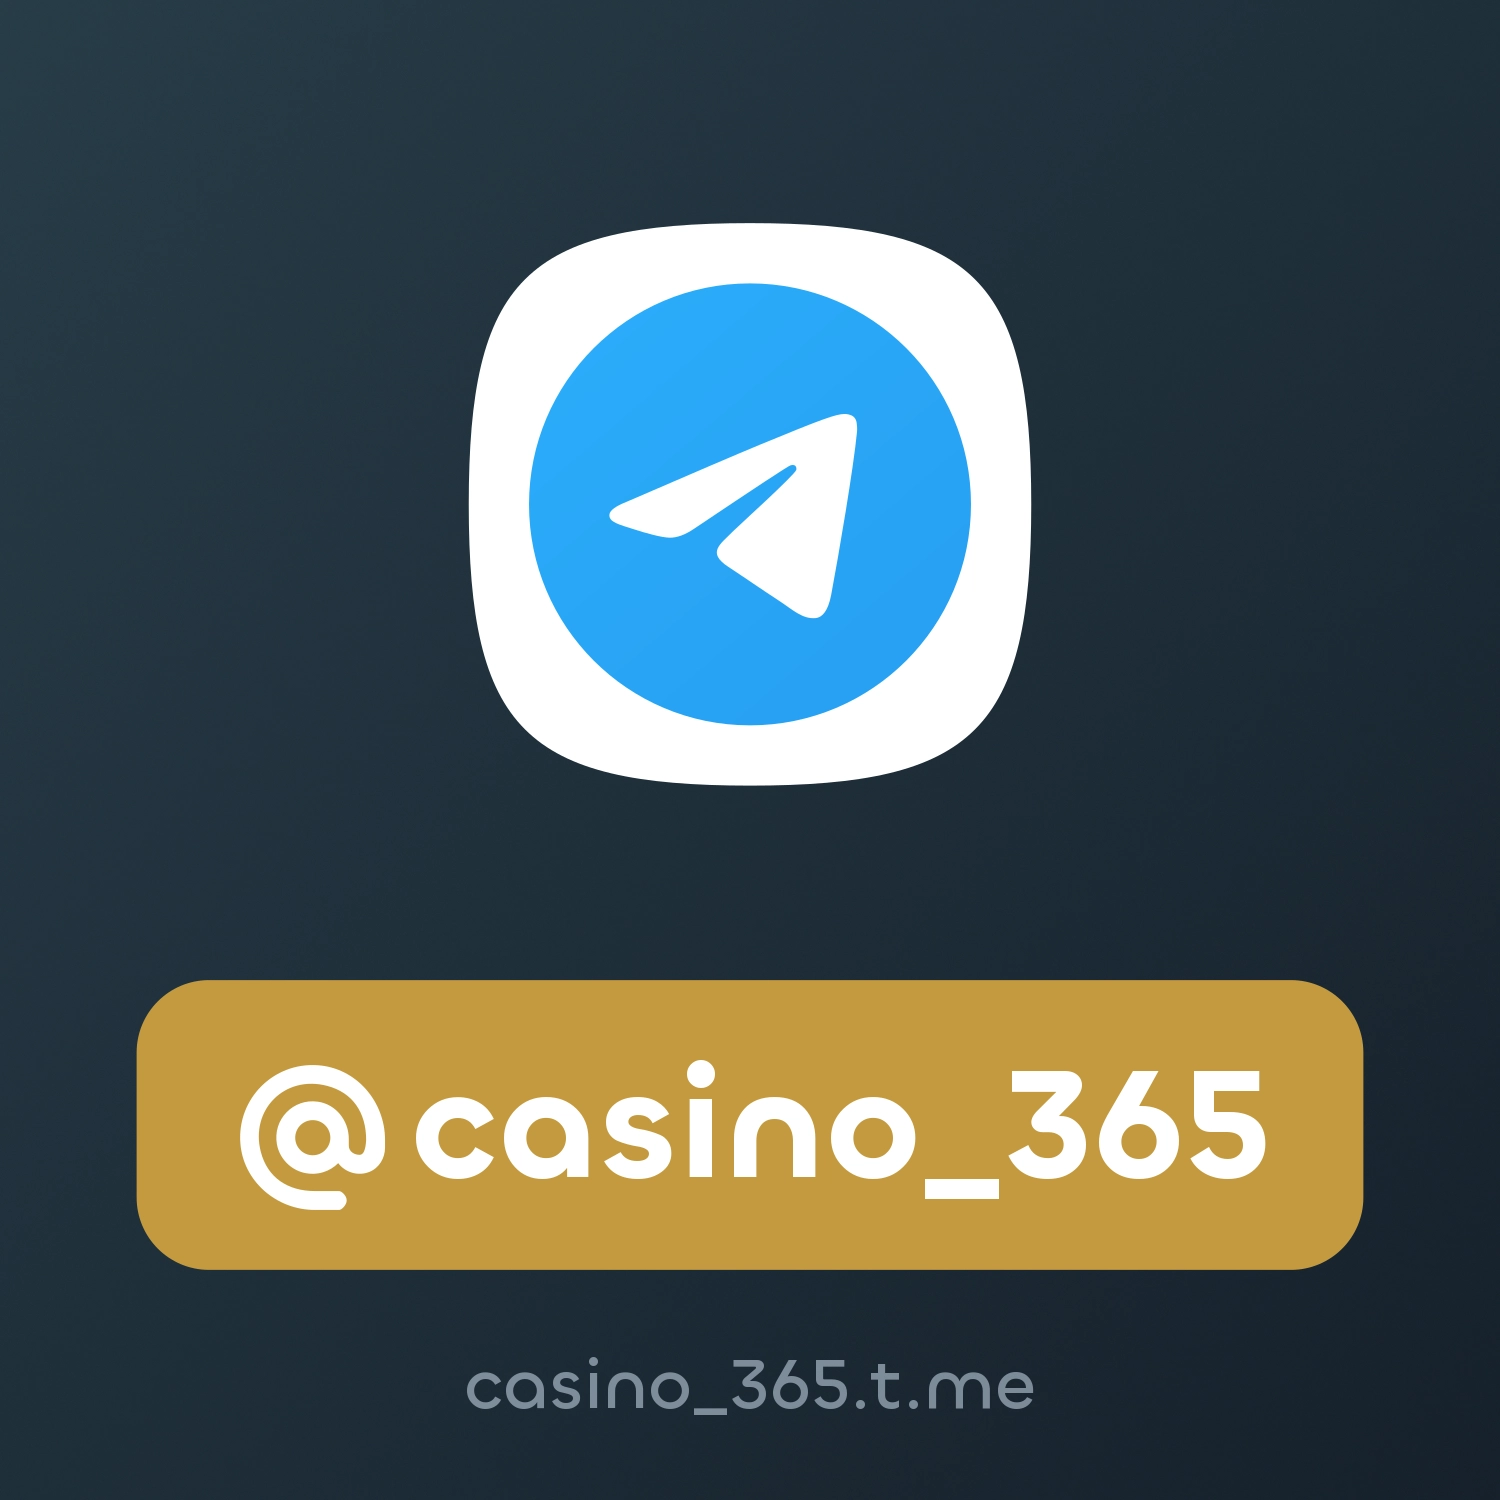 @casino_365